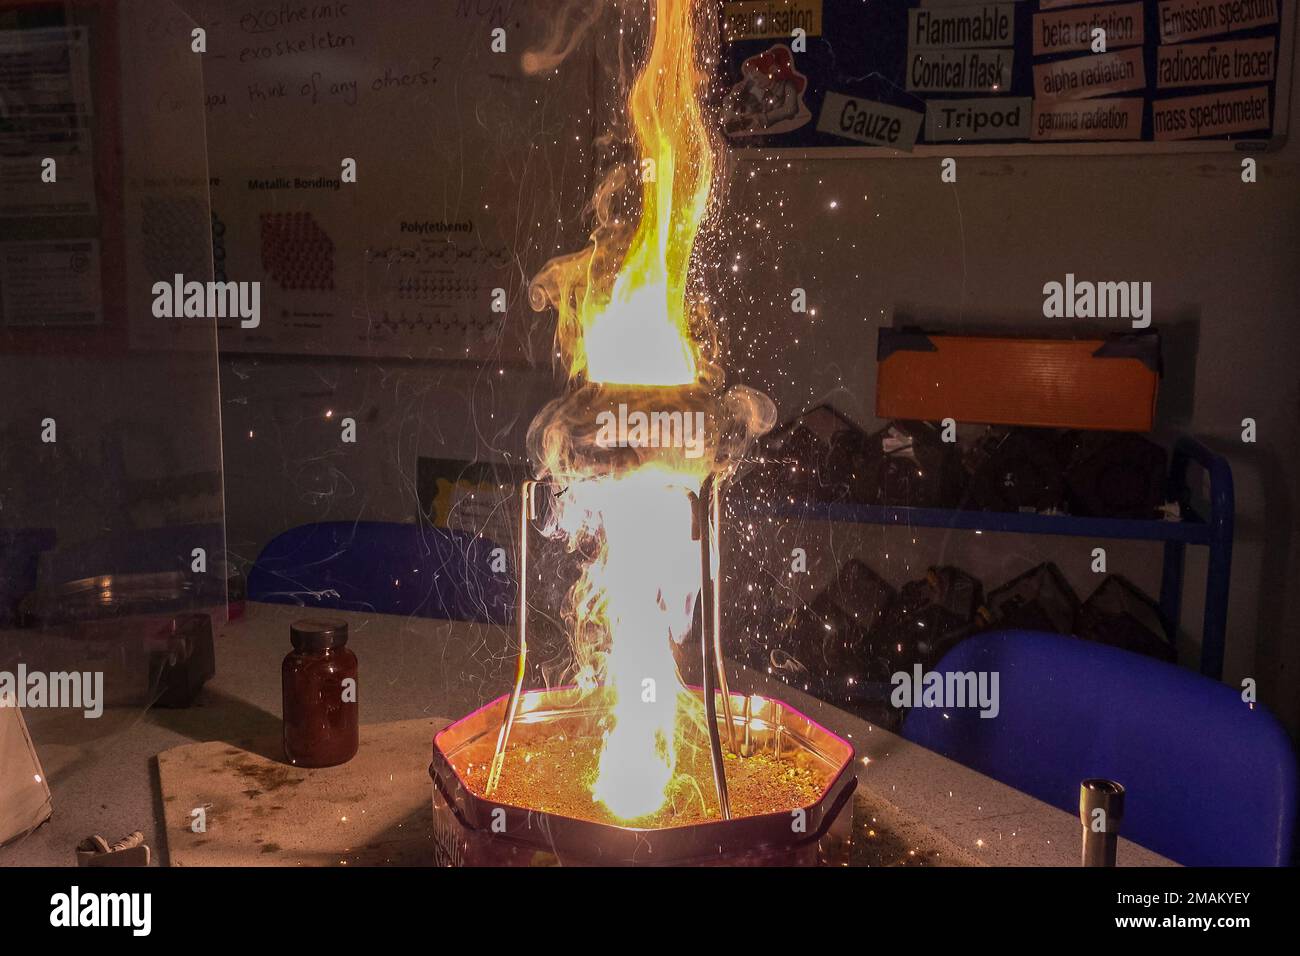 Une réaction thermoite (oxyde de fer (III) et poudre d'aluminium) dans une  école secondaire du Royaume-Uni (n° 2 de la séquence d'images 4) - voir les  notes pour plus de détails Photo